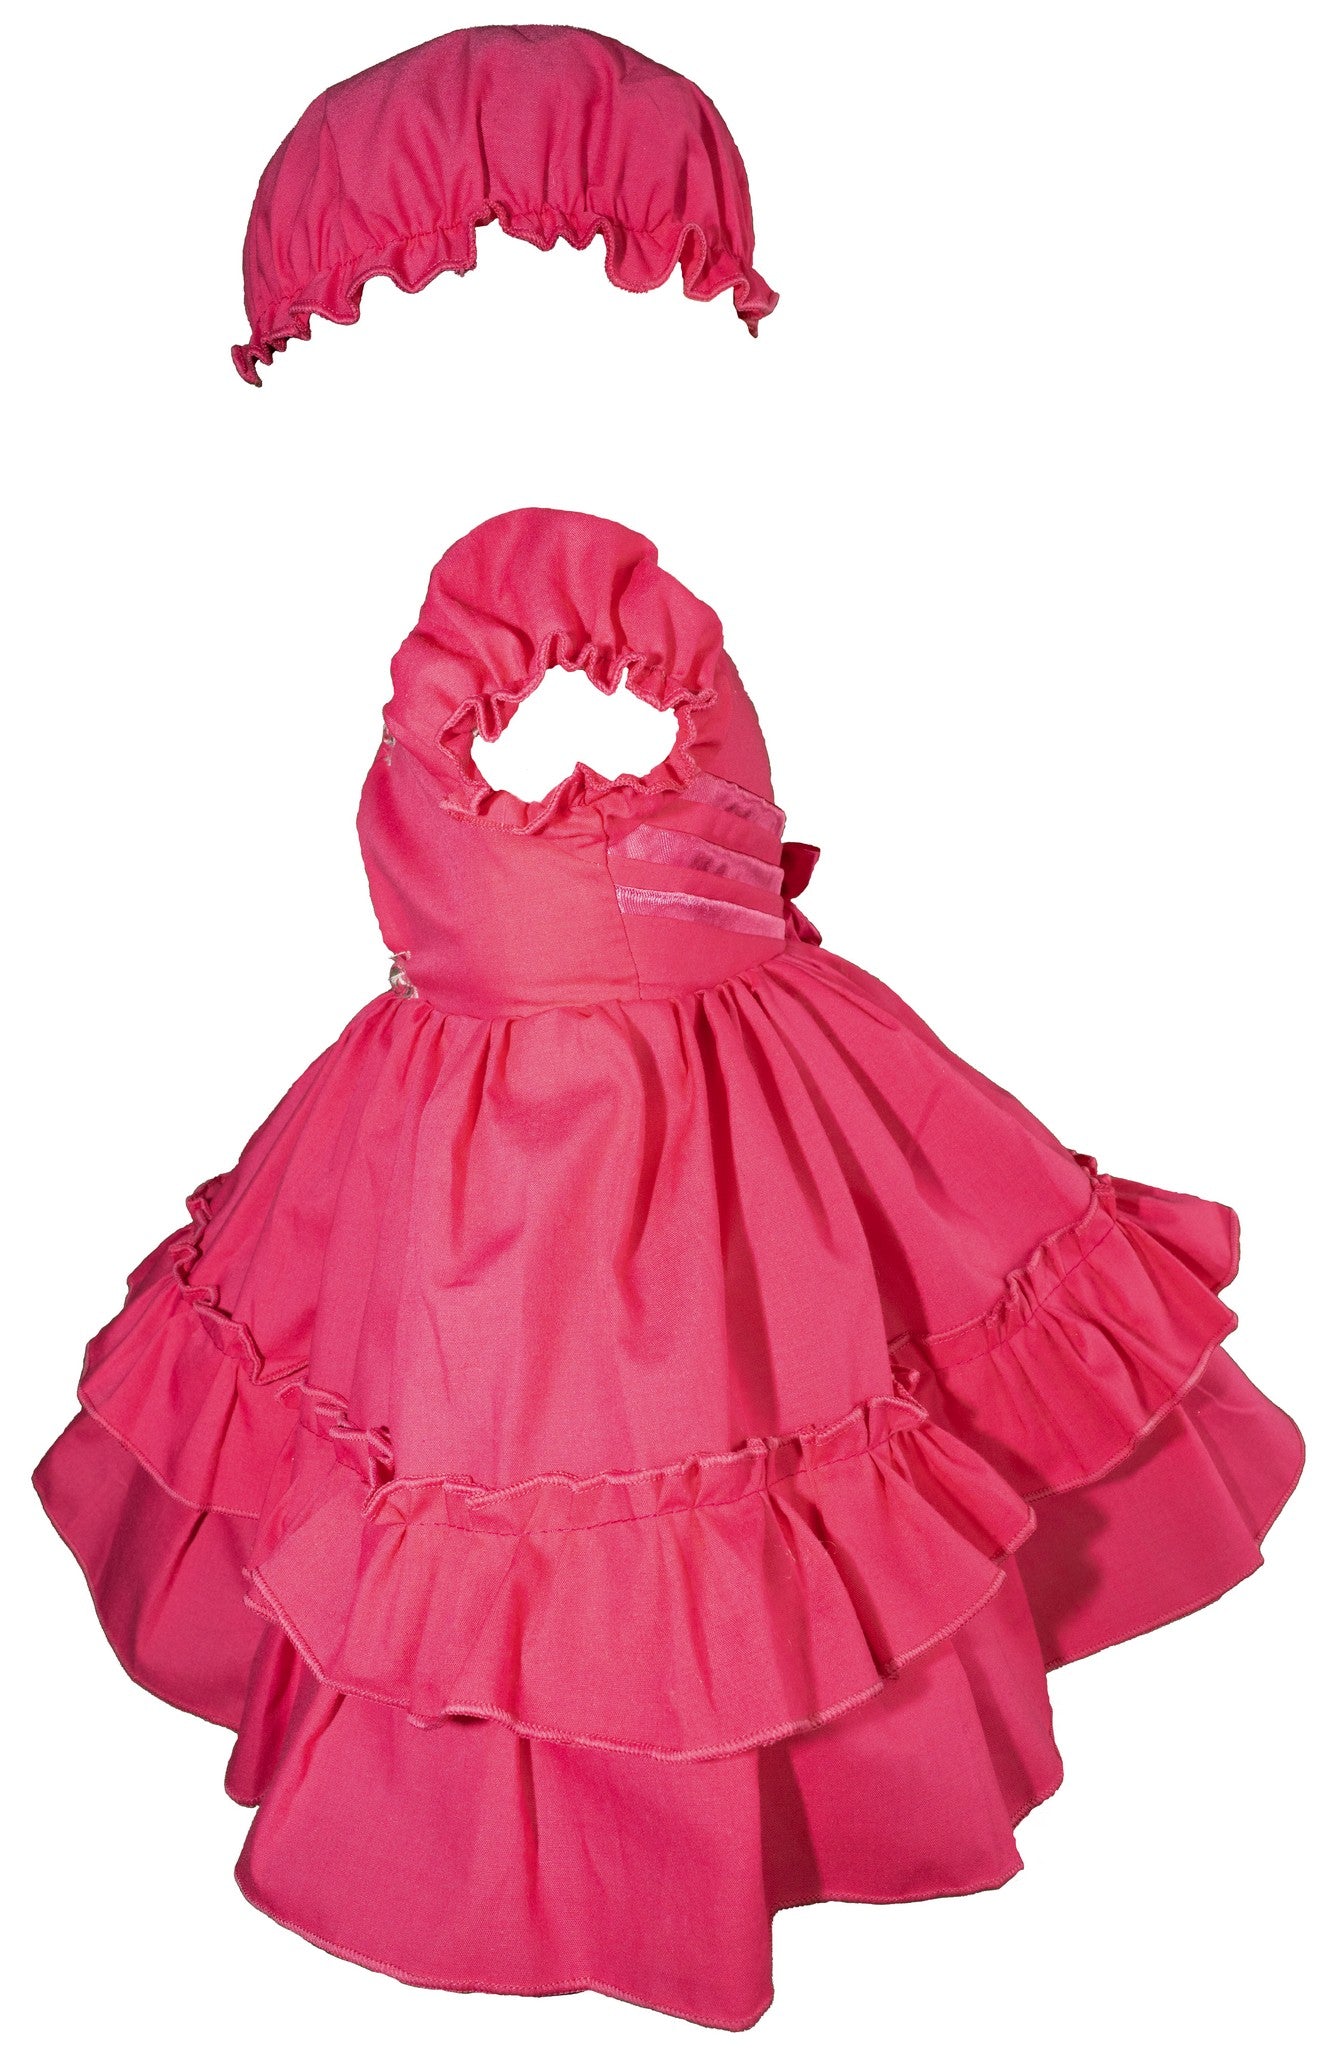 Pink Dress w/ Bonnet